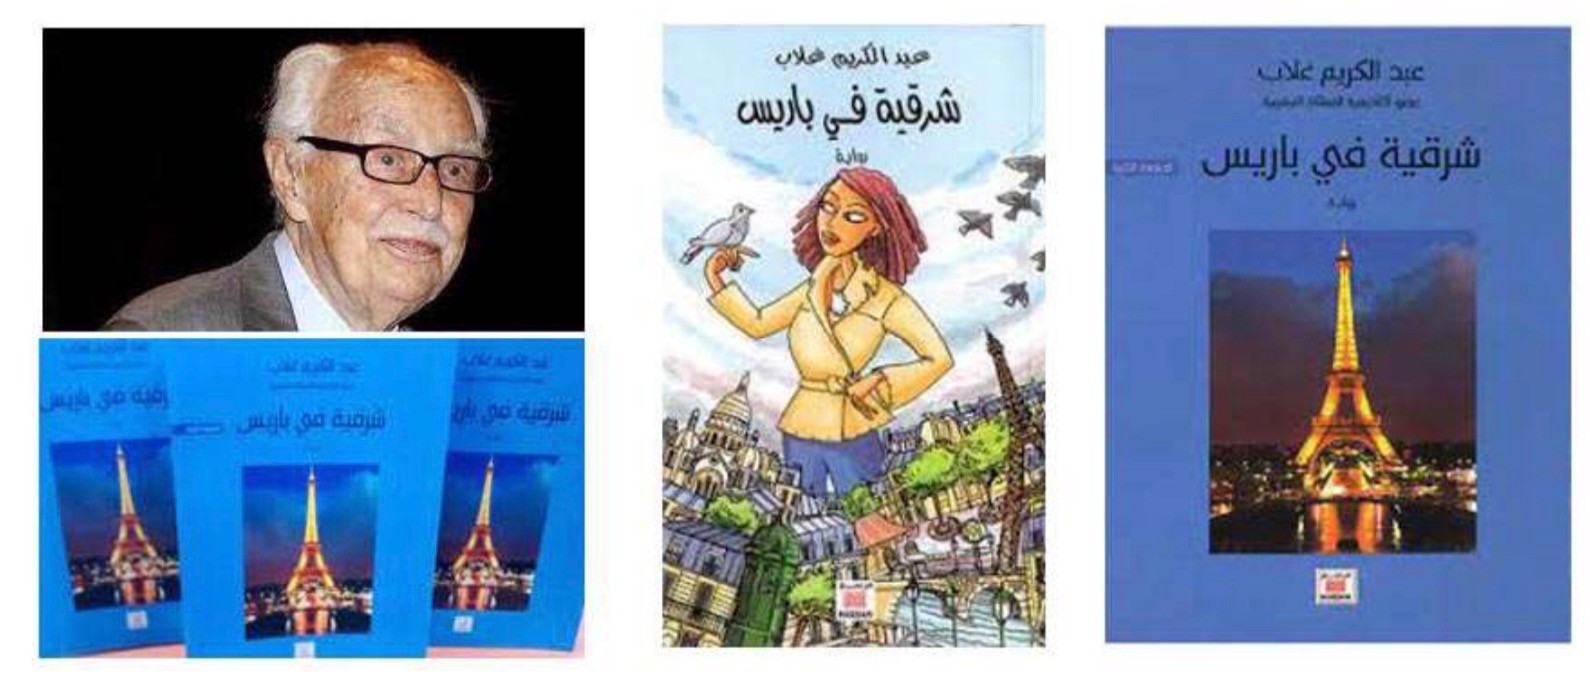 - Abd al-Karim Ghallab, author of “An Oriental Lady in Paris”